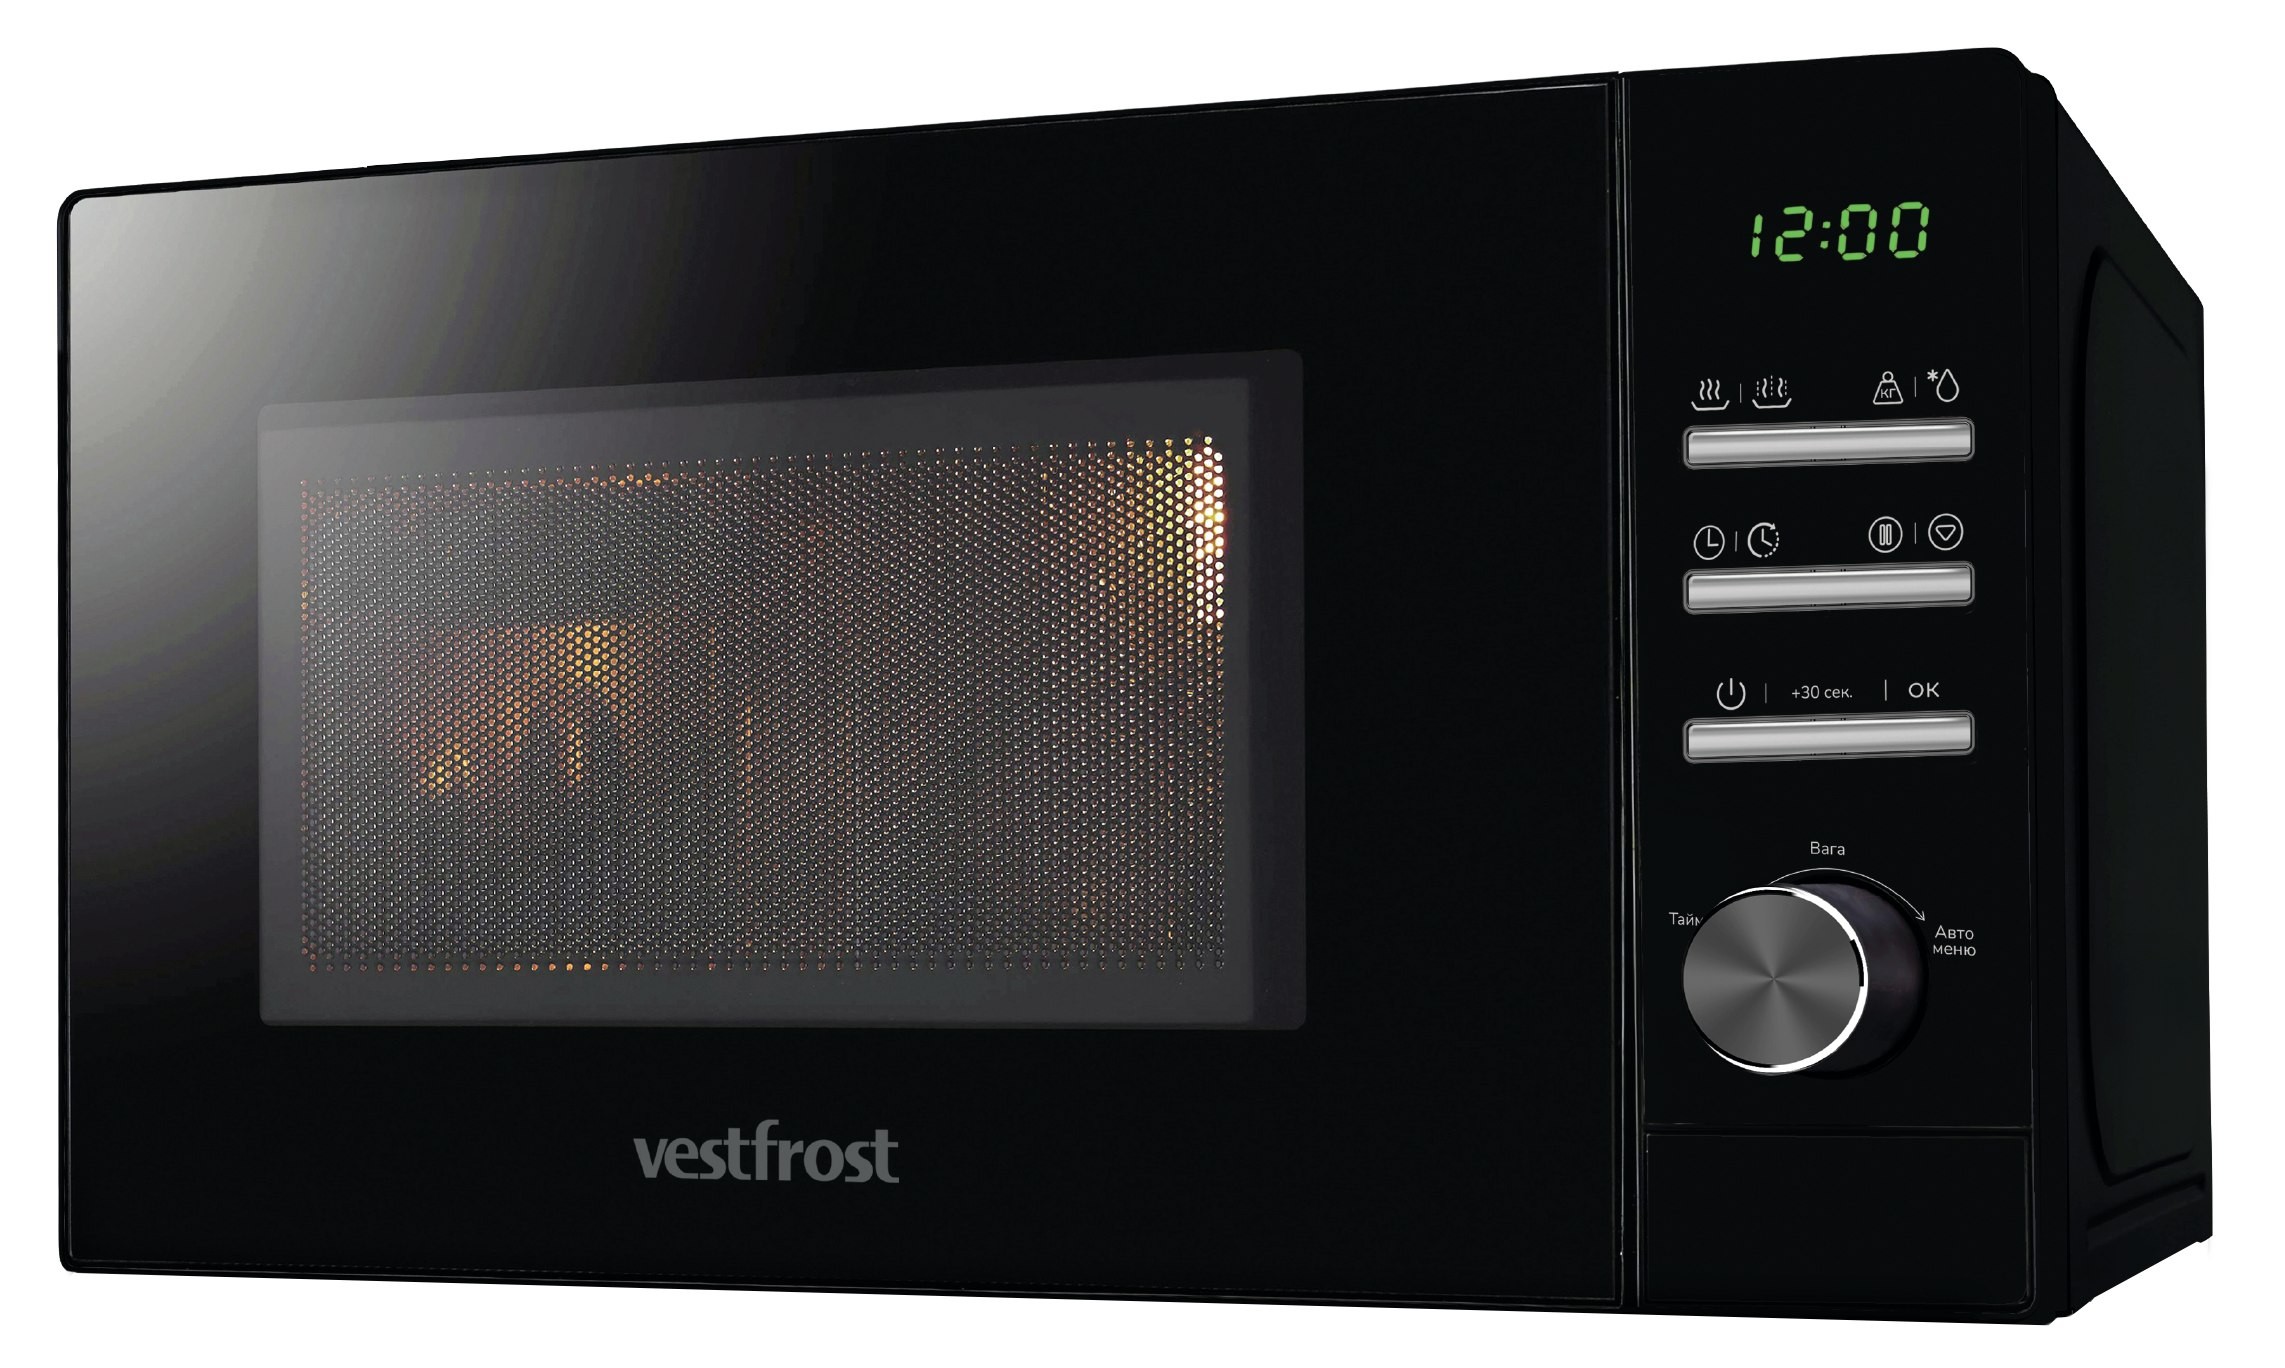 Микроволновая печь Vestfrost VMO 720 BDG в интернет-магазине, главное фото